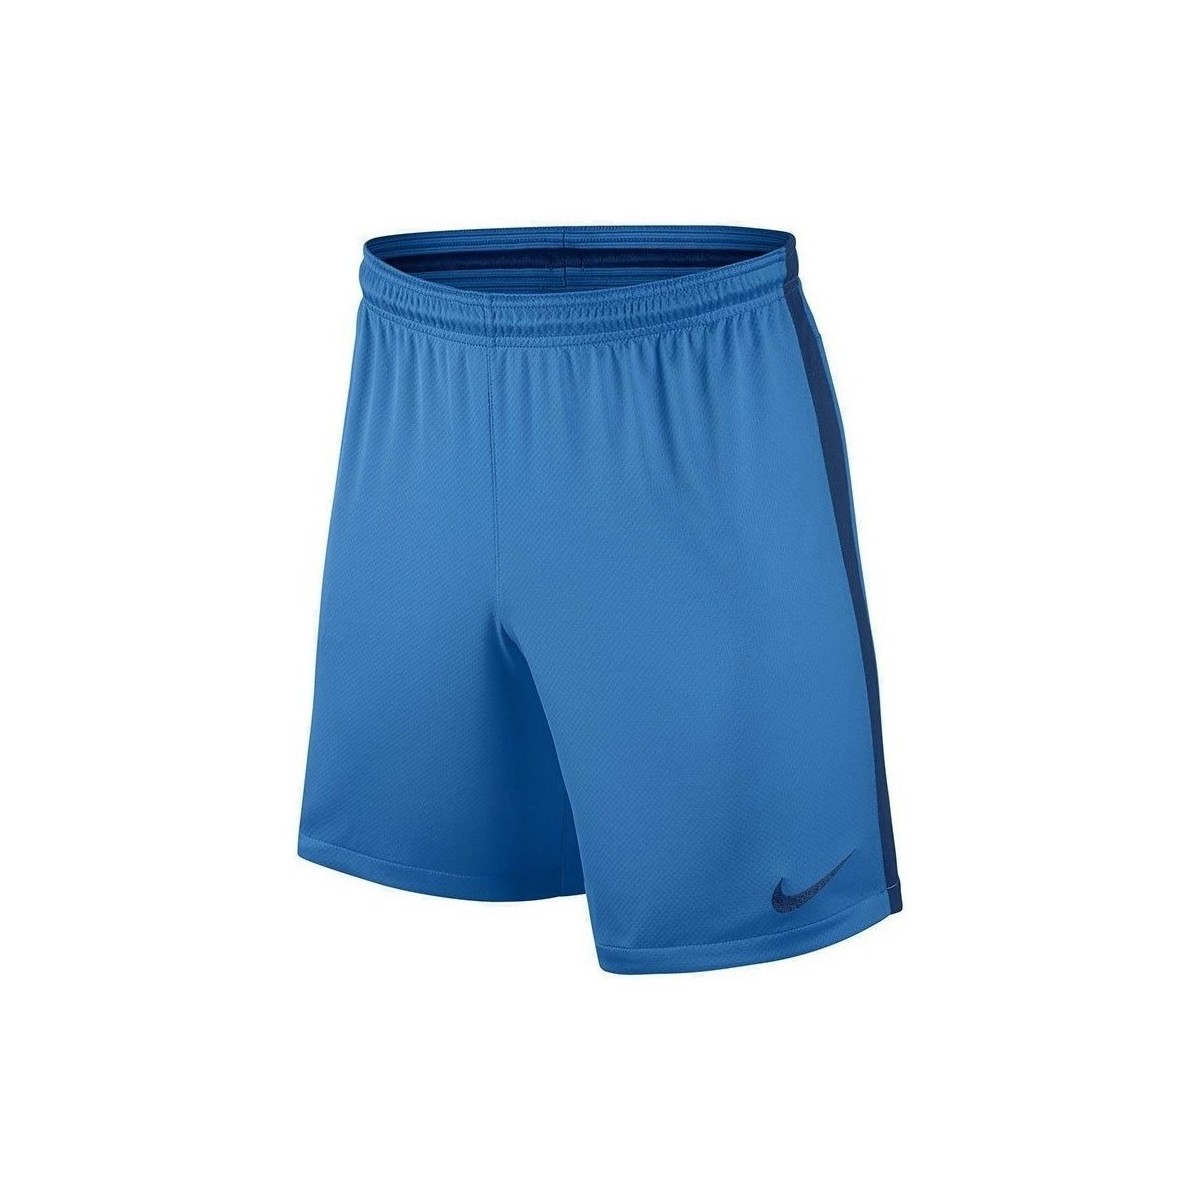 Îmbracaminte Bărbați Pantaloni trei sferturi Nike Squad albastru